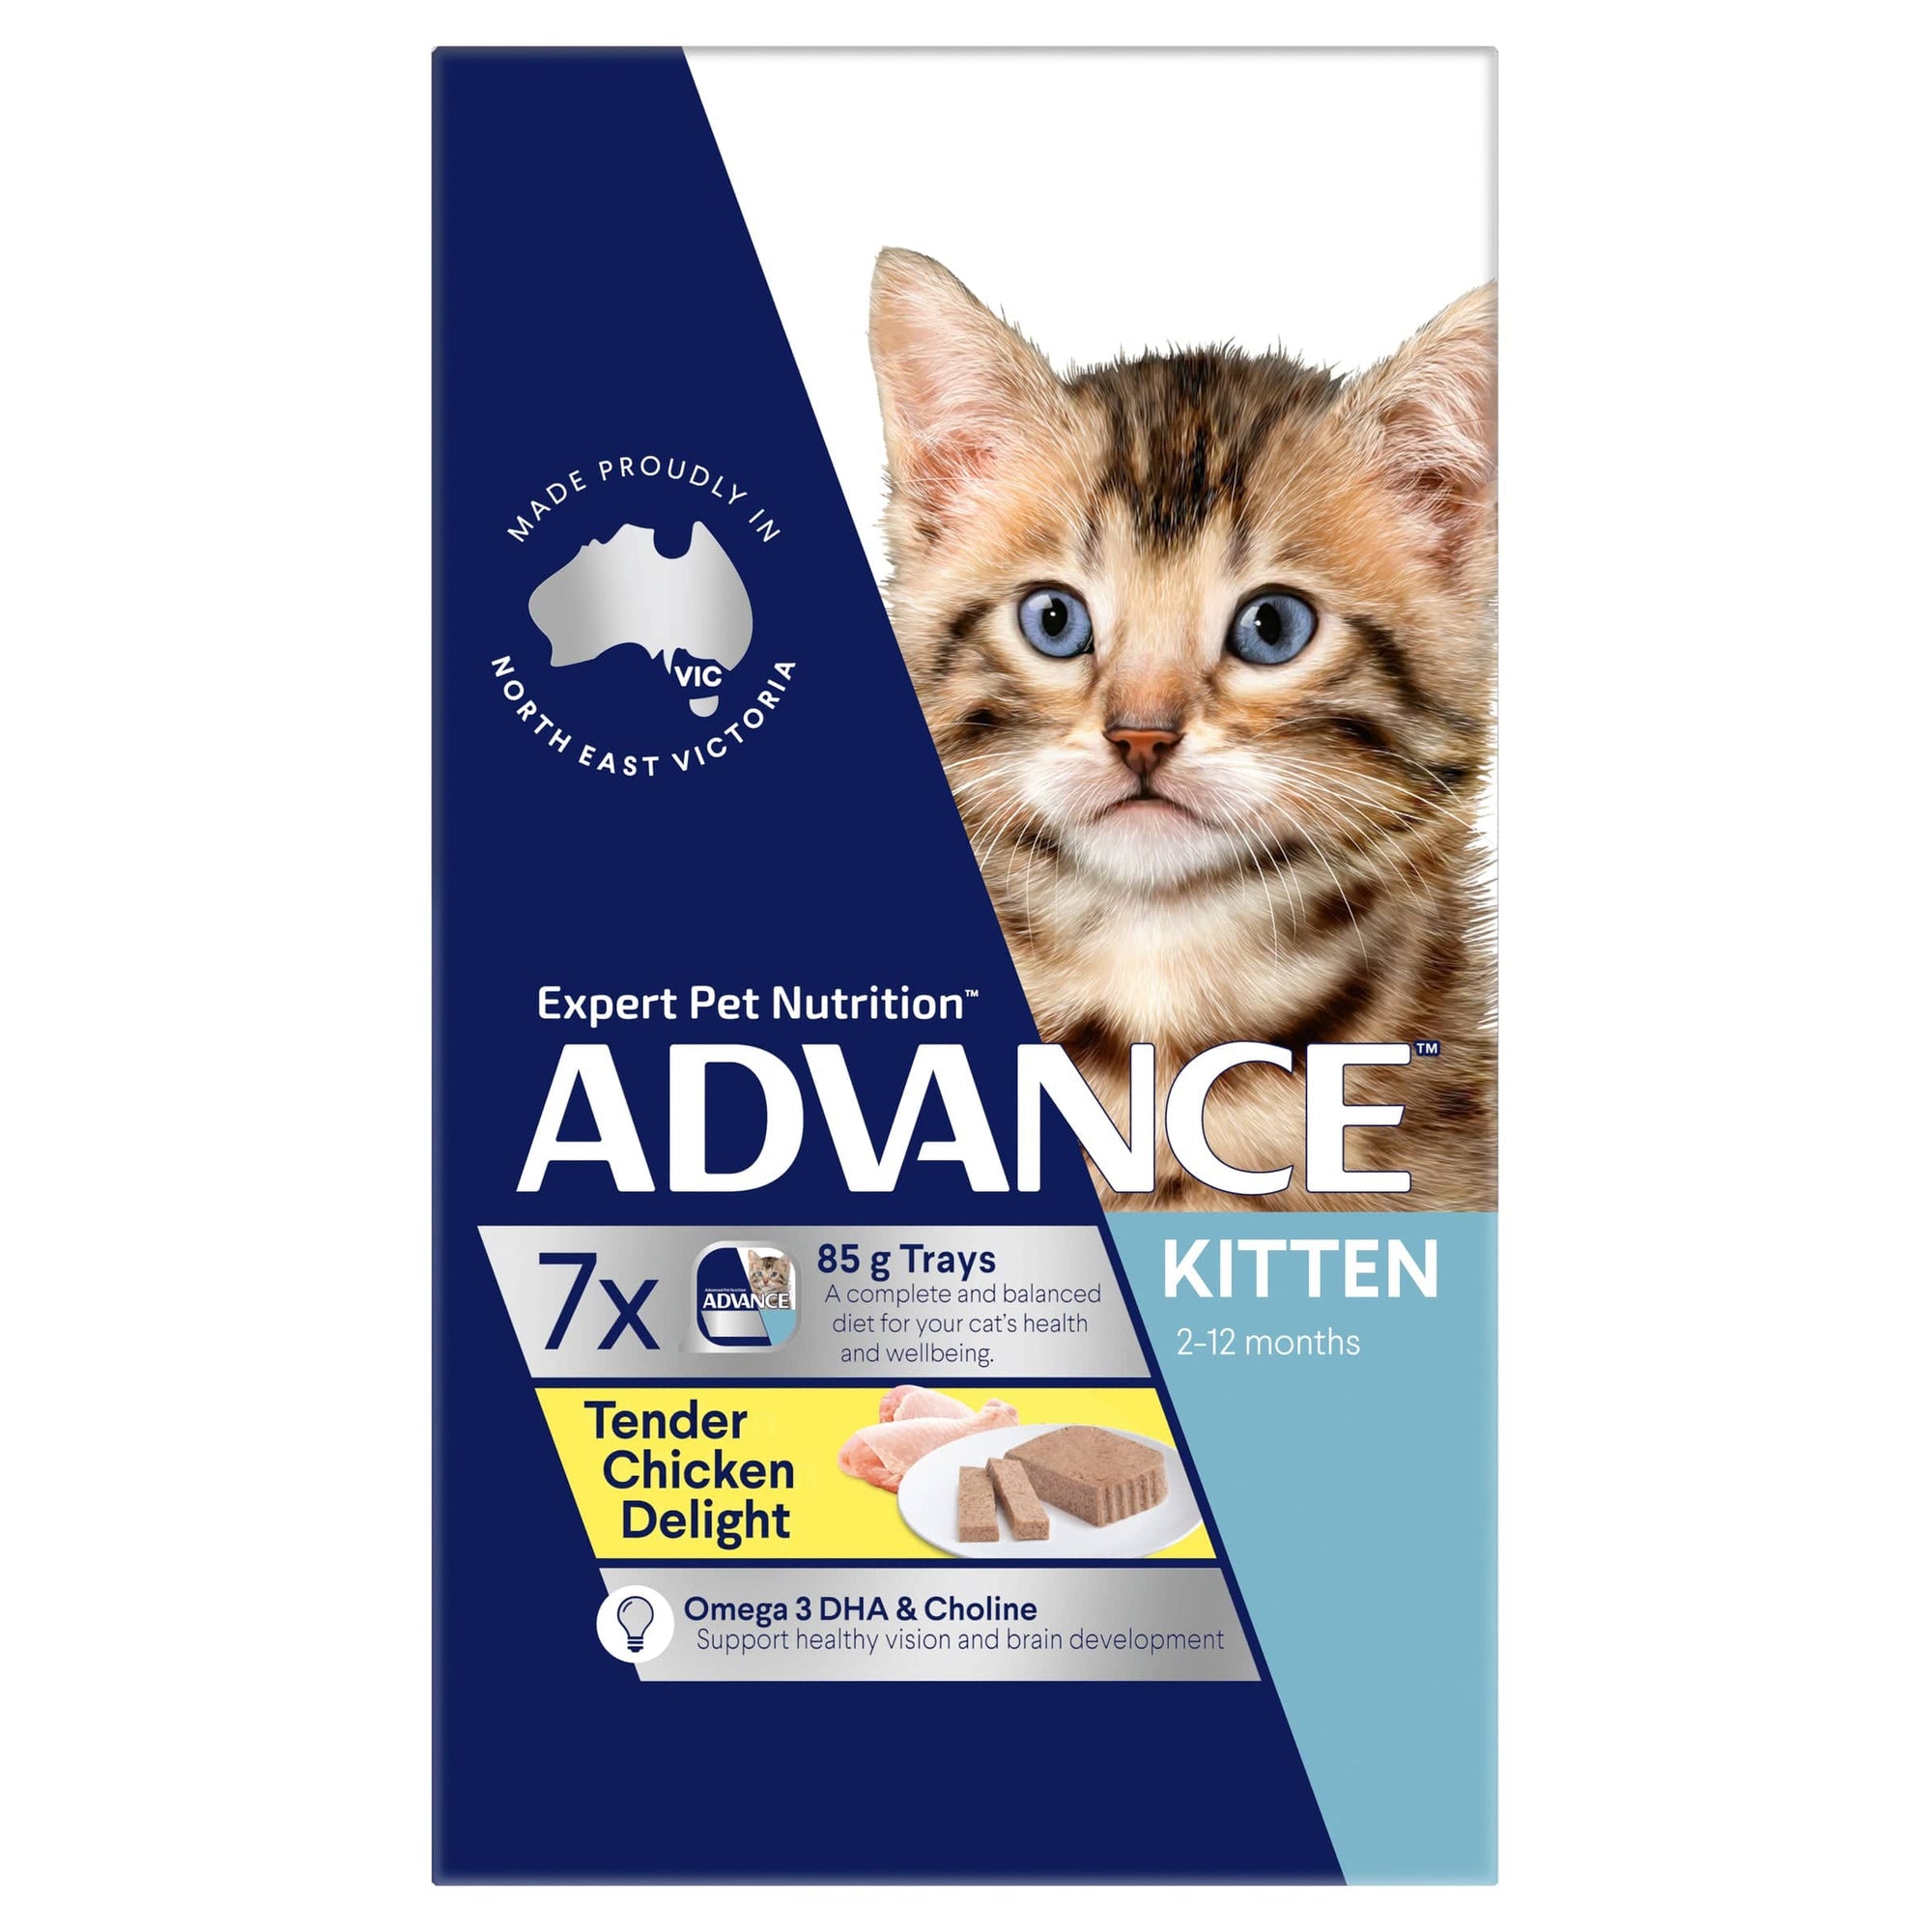 Advance Cat Wet Food Advance Kitten Chicken 7 x 85g pouches